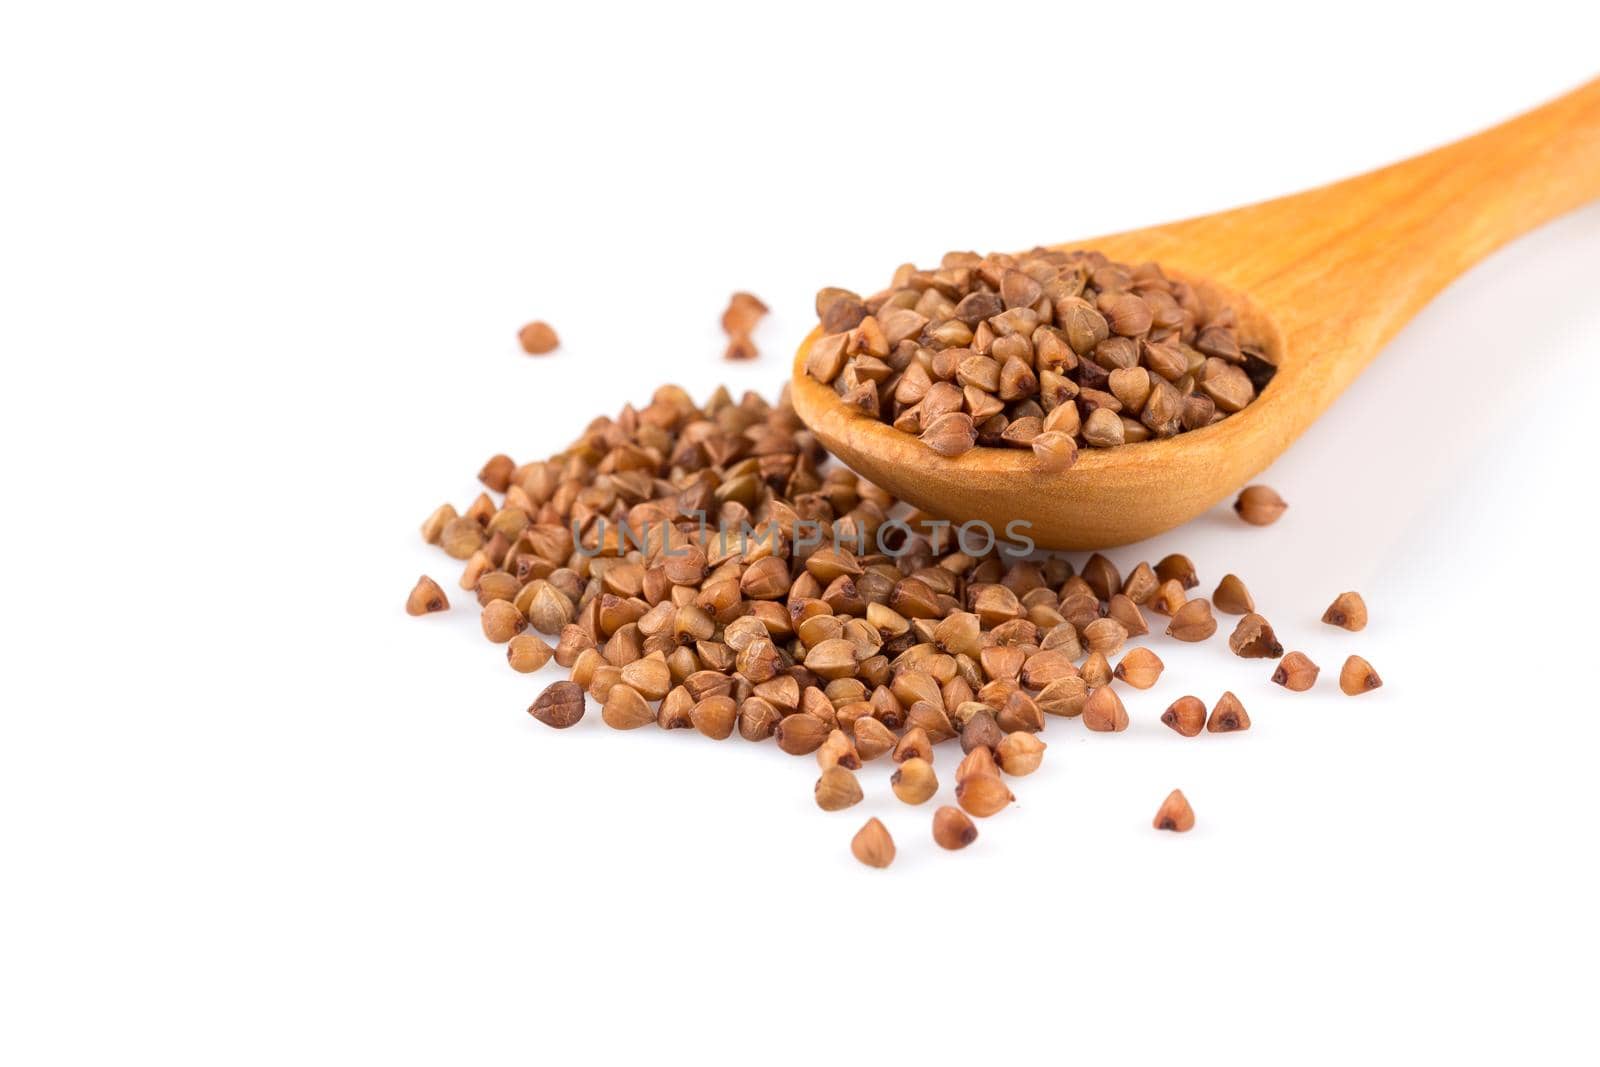 Uncooked buckwheat on wooden spoon. premium buckwheat groats on white background